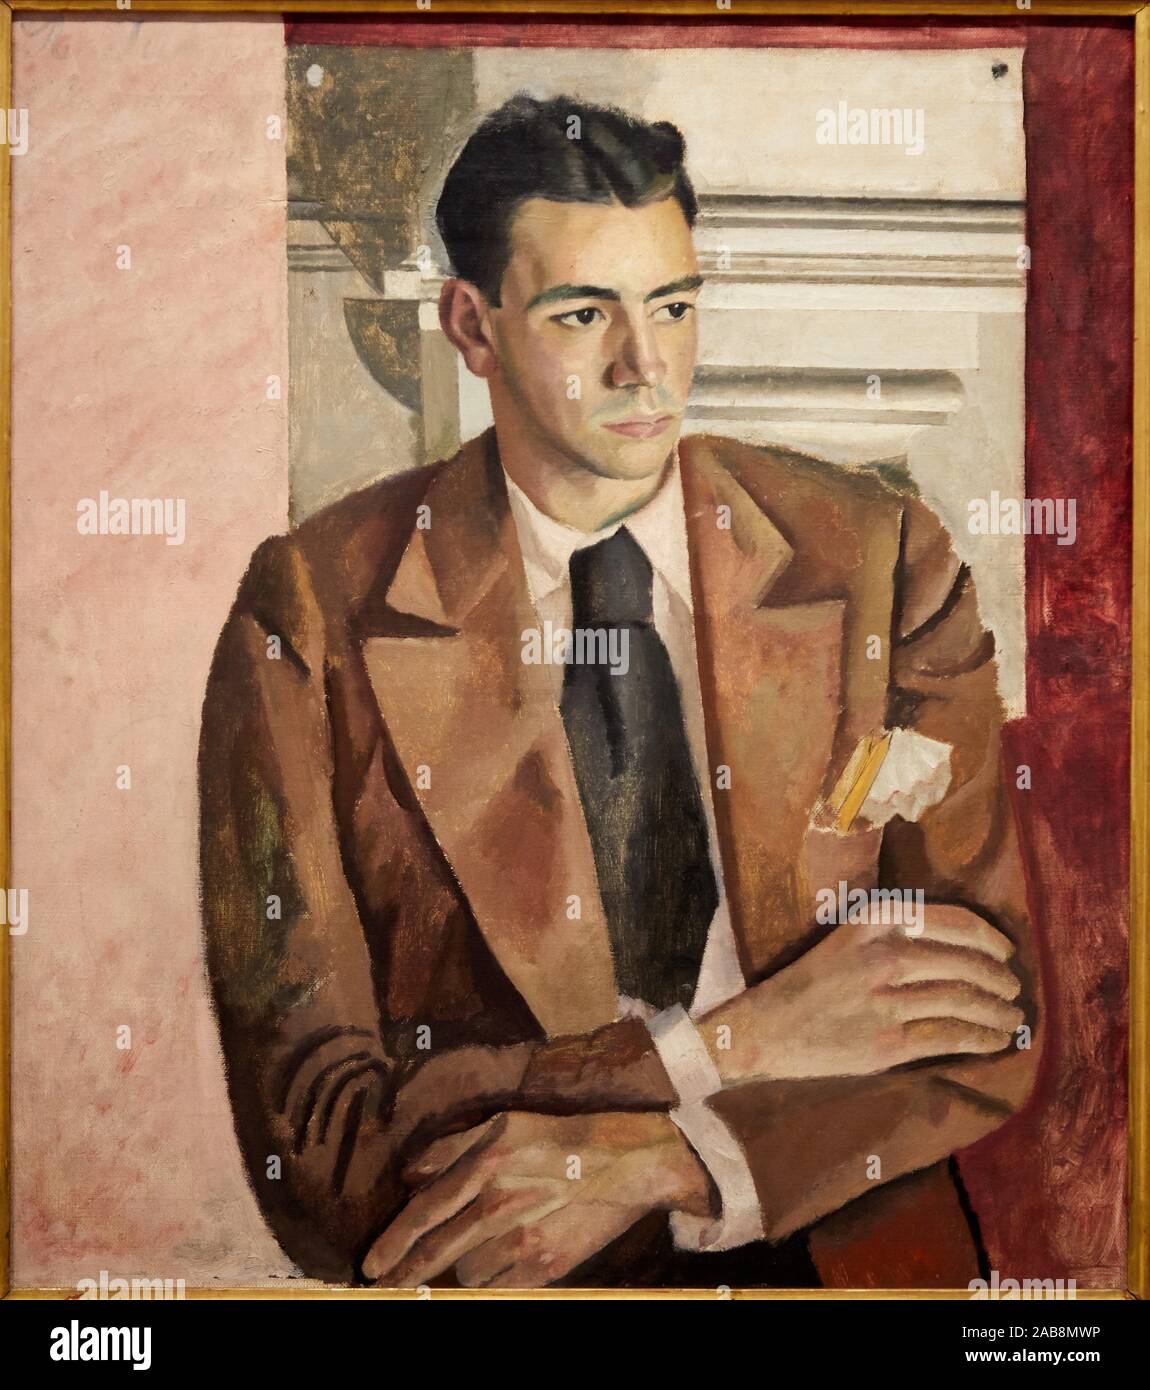 '''Retratos del pintor Díaz Calleja'', c. 1930, Jesús Olasagasti, (1907-1955), el Museo de Bellas Artes, Bilbao, Vizcaya, País Vasco, España Foto de stock